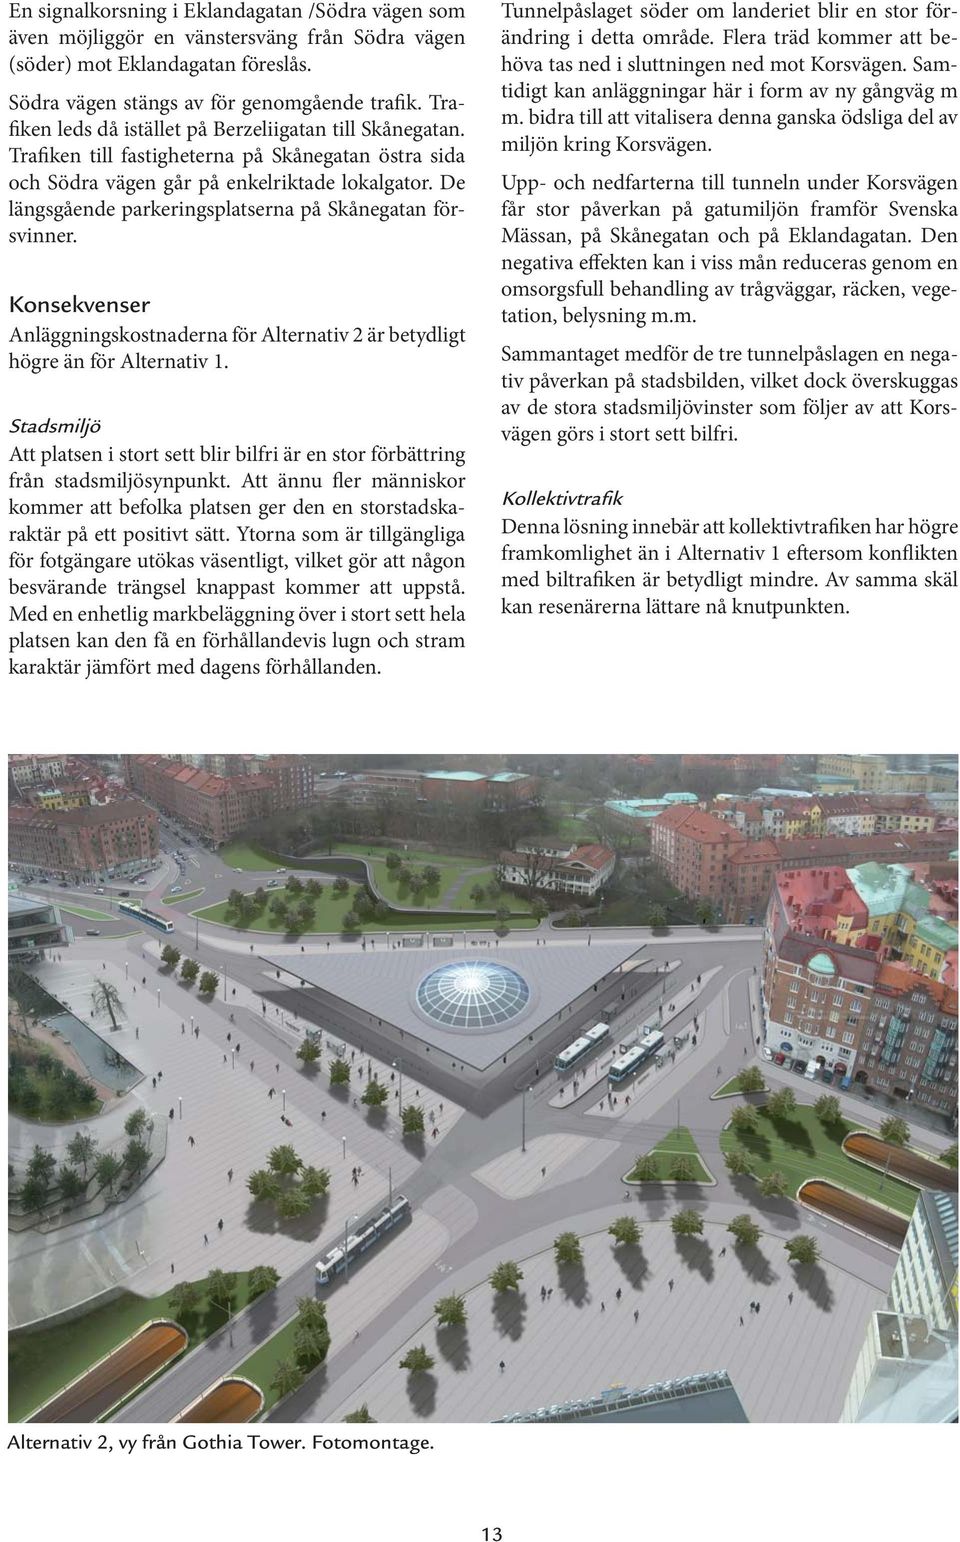 De längsgående parkeringsplatserna på Skånegatan försvinner. Konsekvenser Anläggningskostnaderna för Alternativ 2 är betydligt högre än för Alternativ 1.